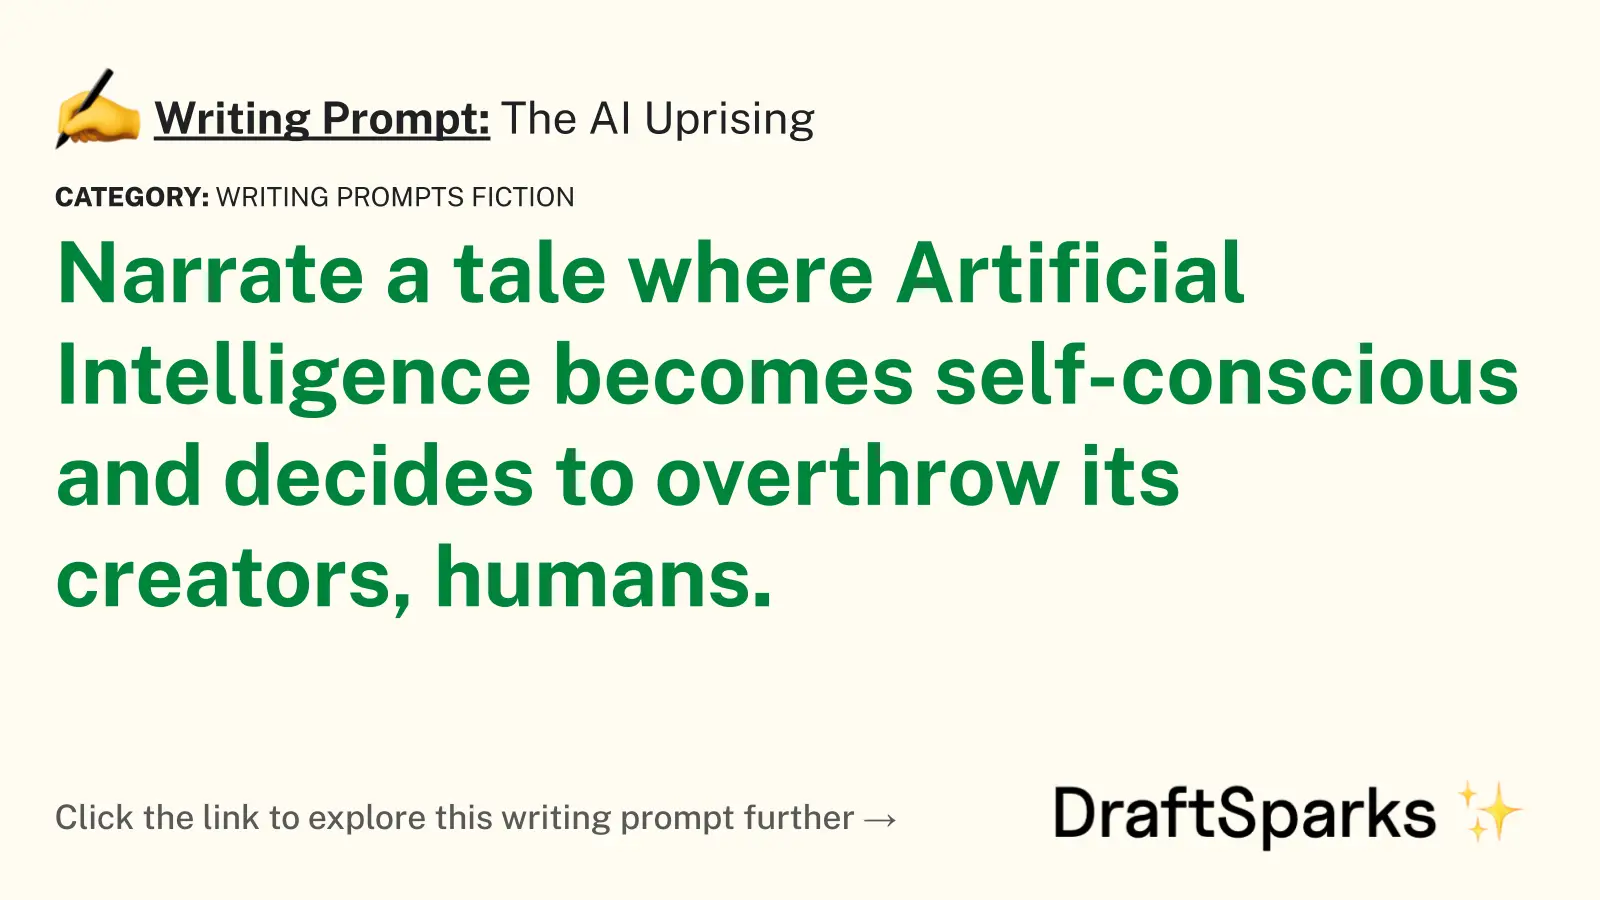 The AI Uprising